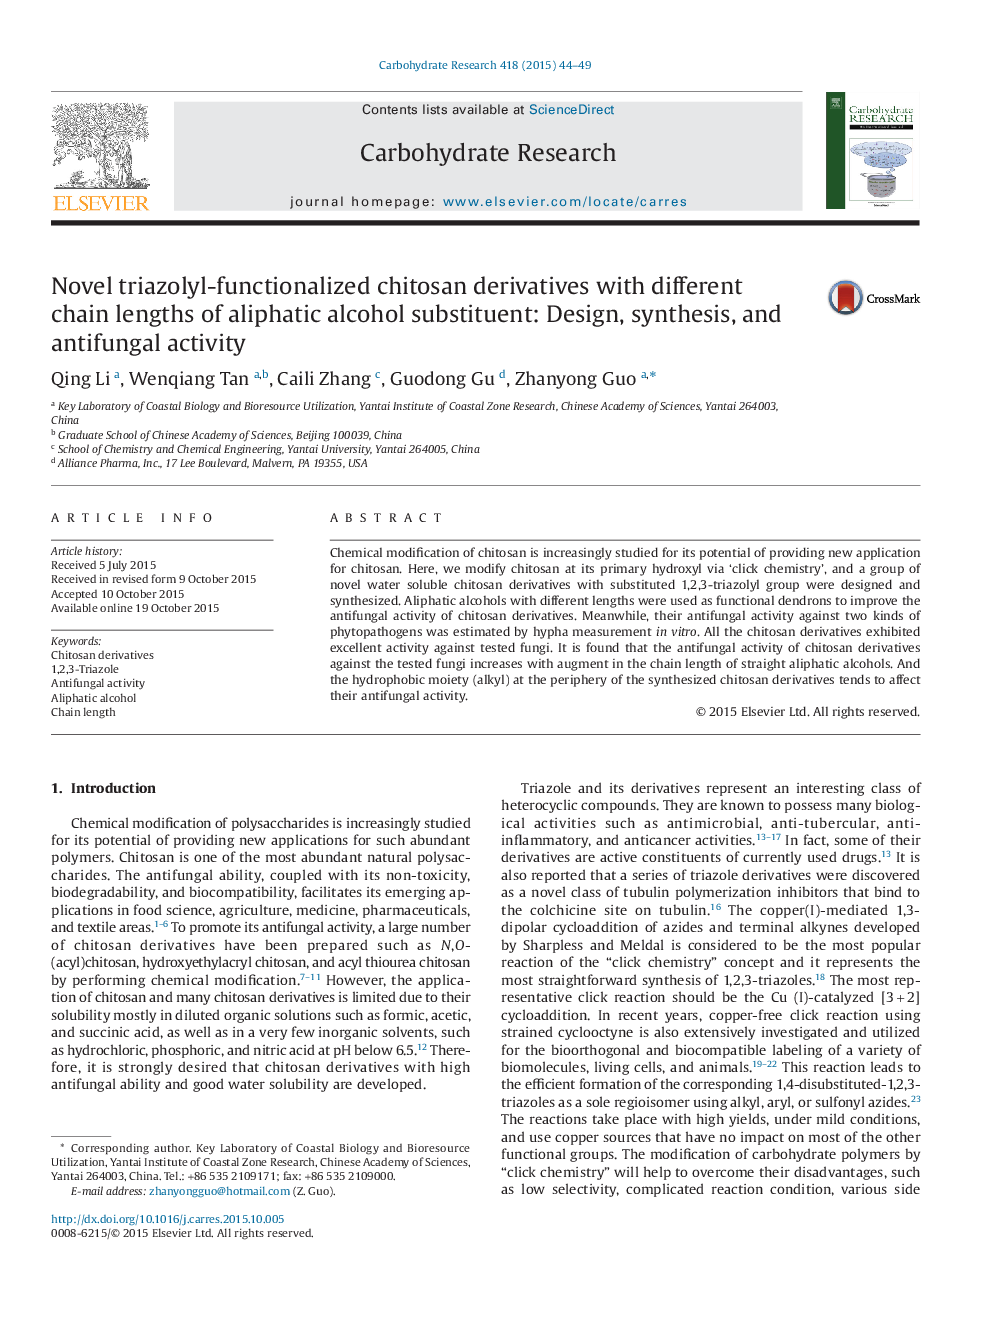 مشتقات کیتوزان ترازولیل کارائی با طول زنجیره های مختلف آلژینات آلژینات: طراحی، سنتز و فعالیت ضد قارچ 